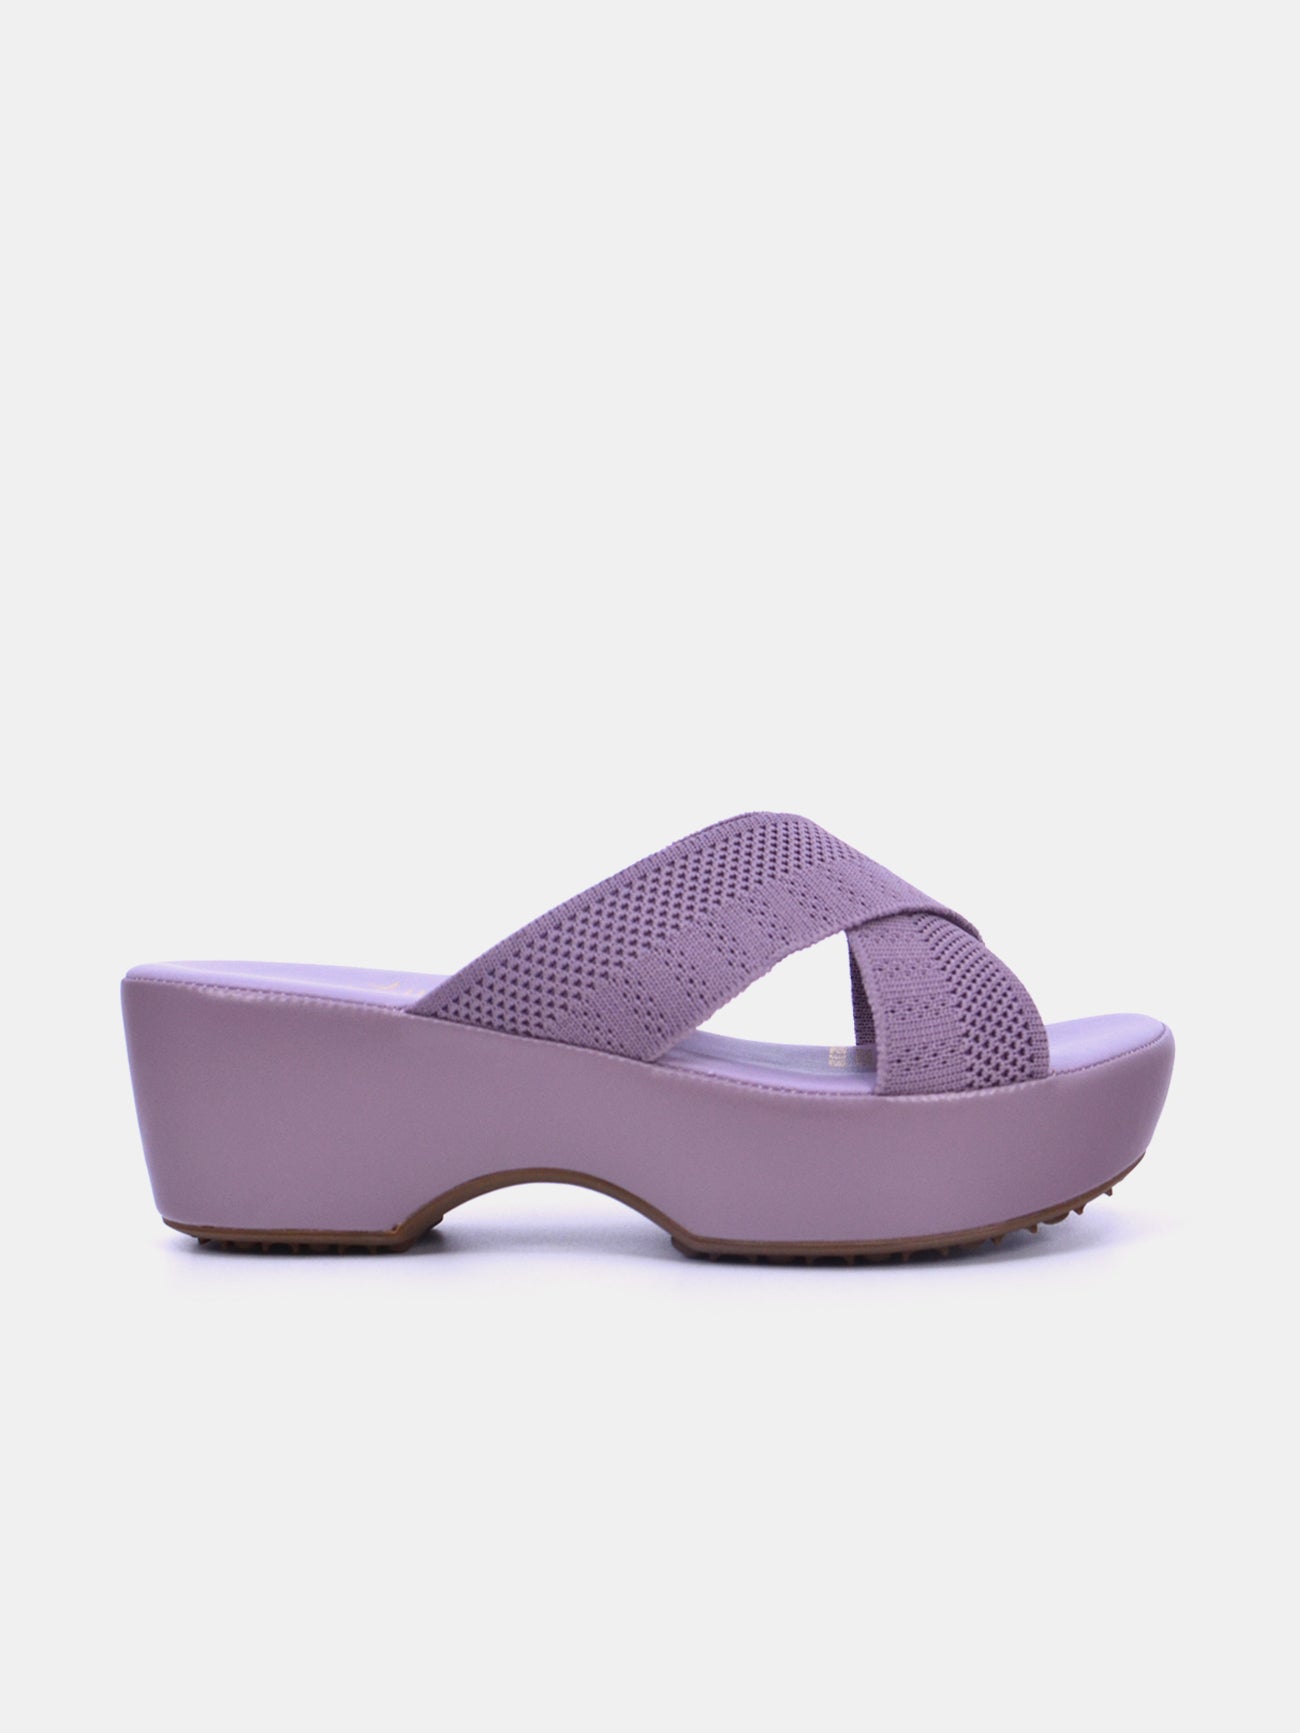 Michelle Morgan 214RJL16 Women's Heeled Sandals #color_Piurple